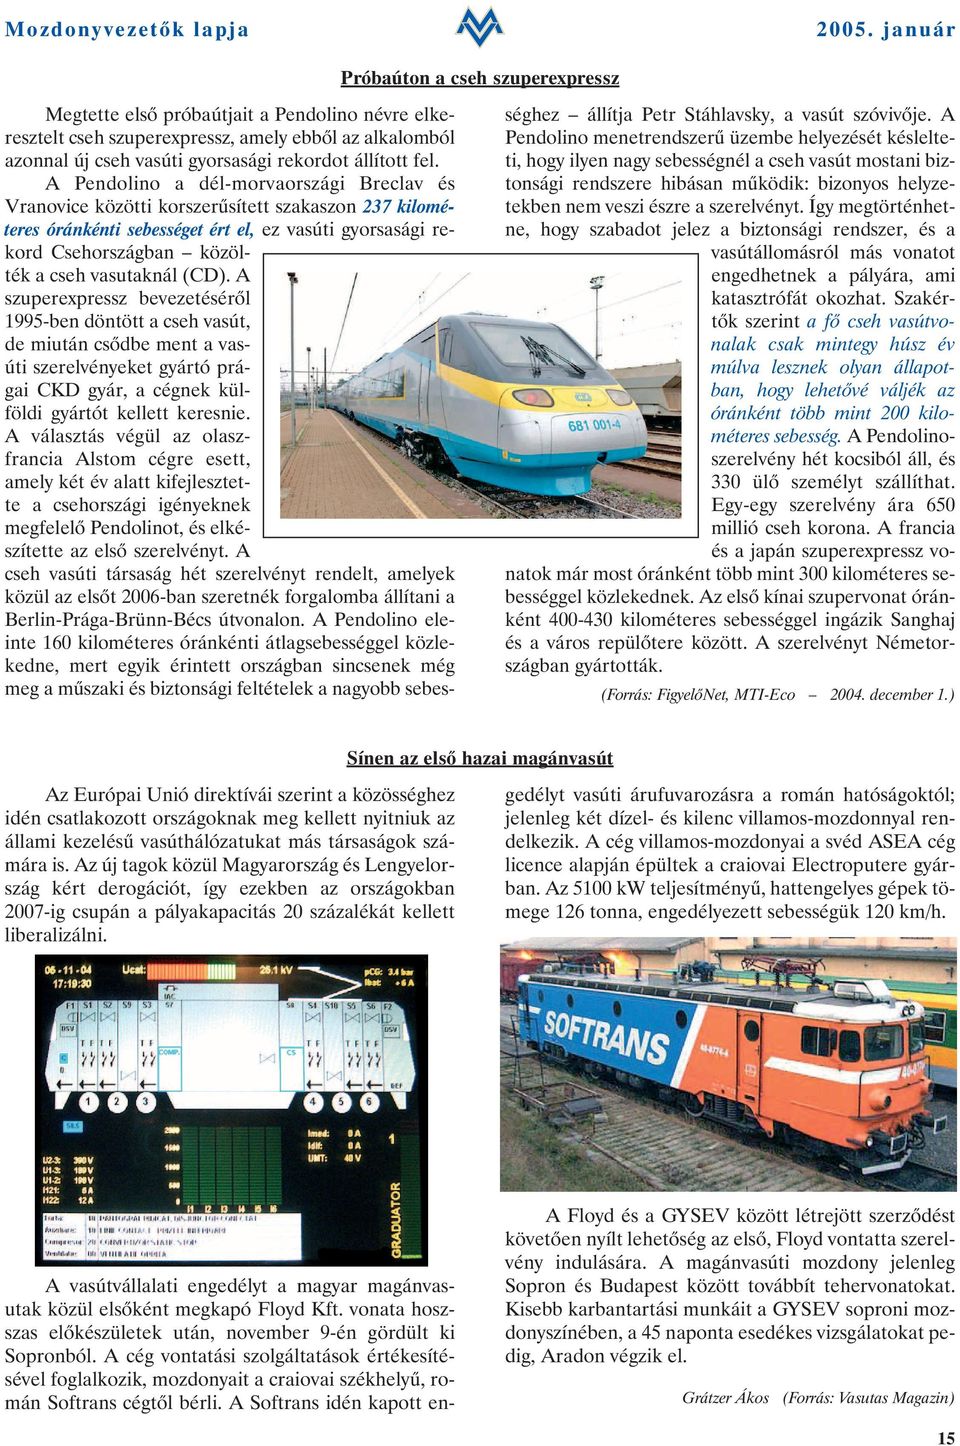 (CD). A szuperexpressz bevezetésérõl 1995-ben döntött a cseh vasút, de miután csõdbe ment a vasúti szerelvényeket gyártó prágai CKD gyár, a cégnek külföldi gyártót kellett keresnie.